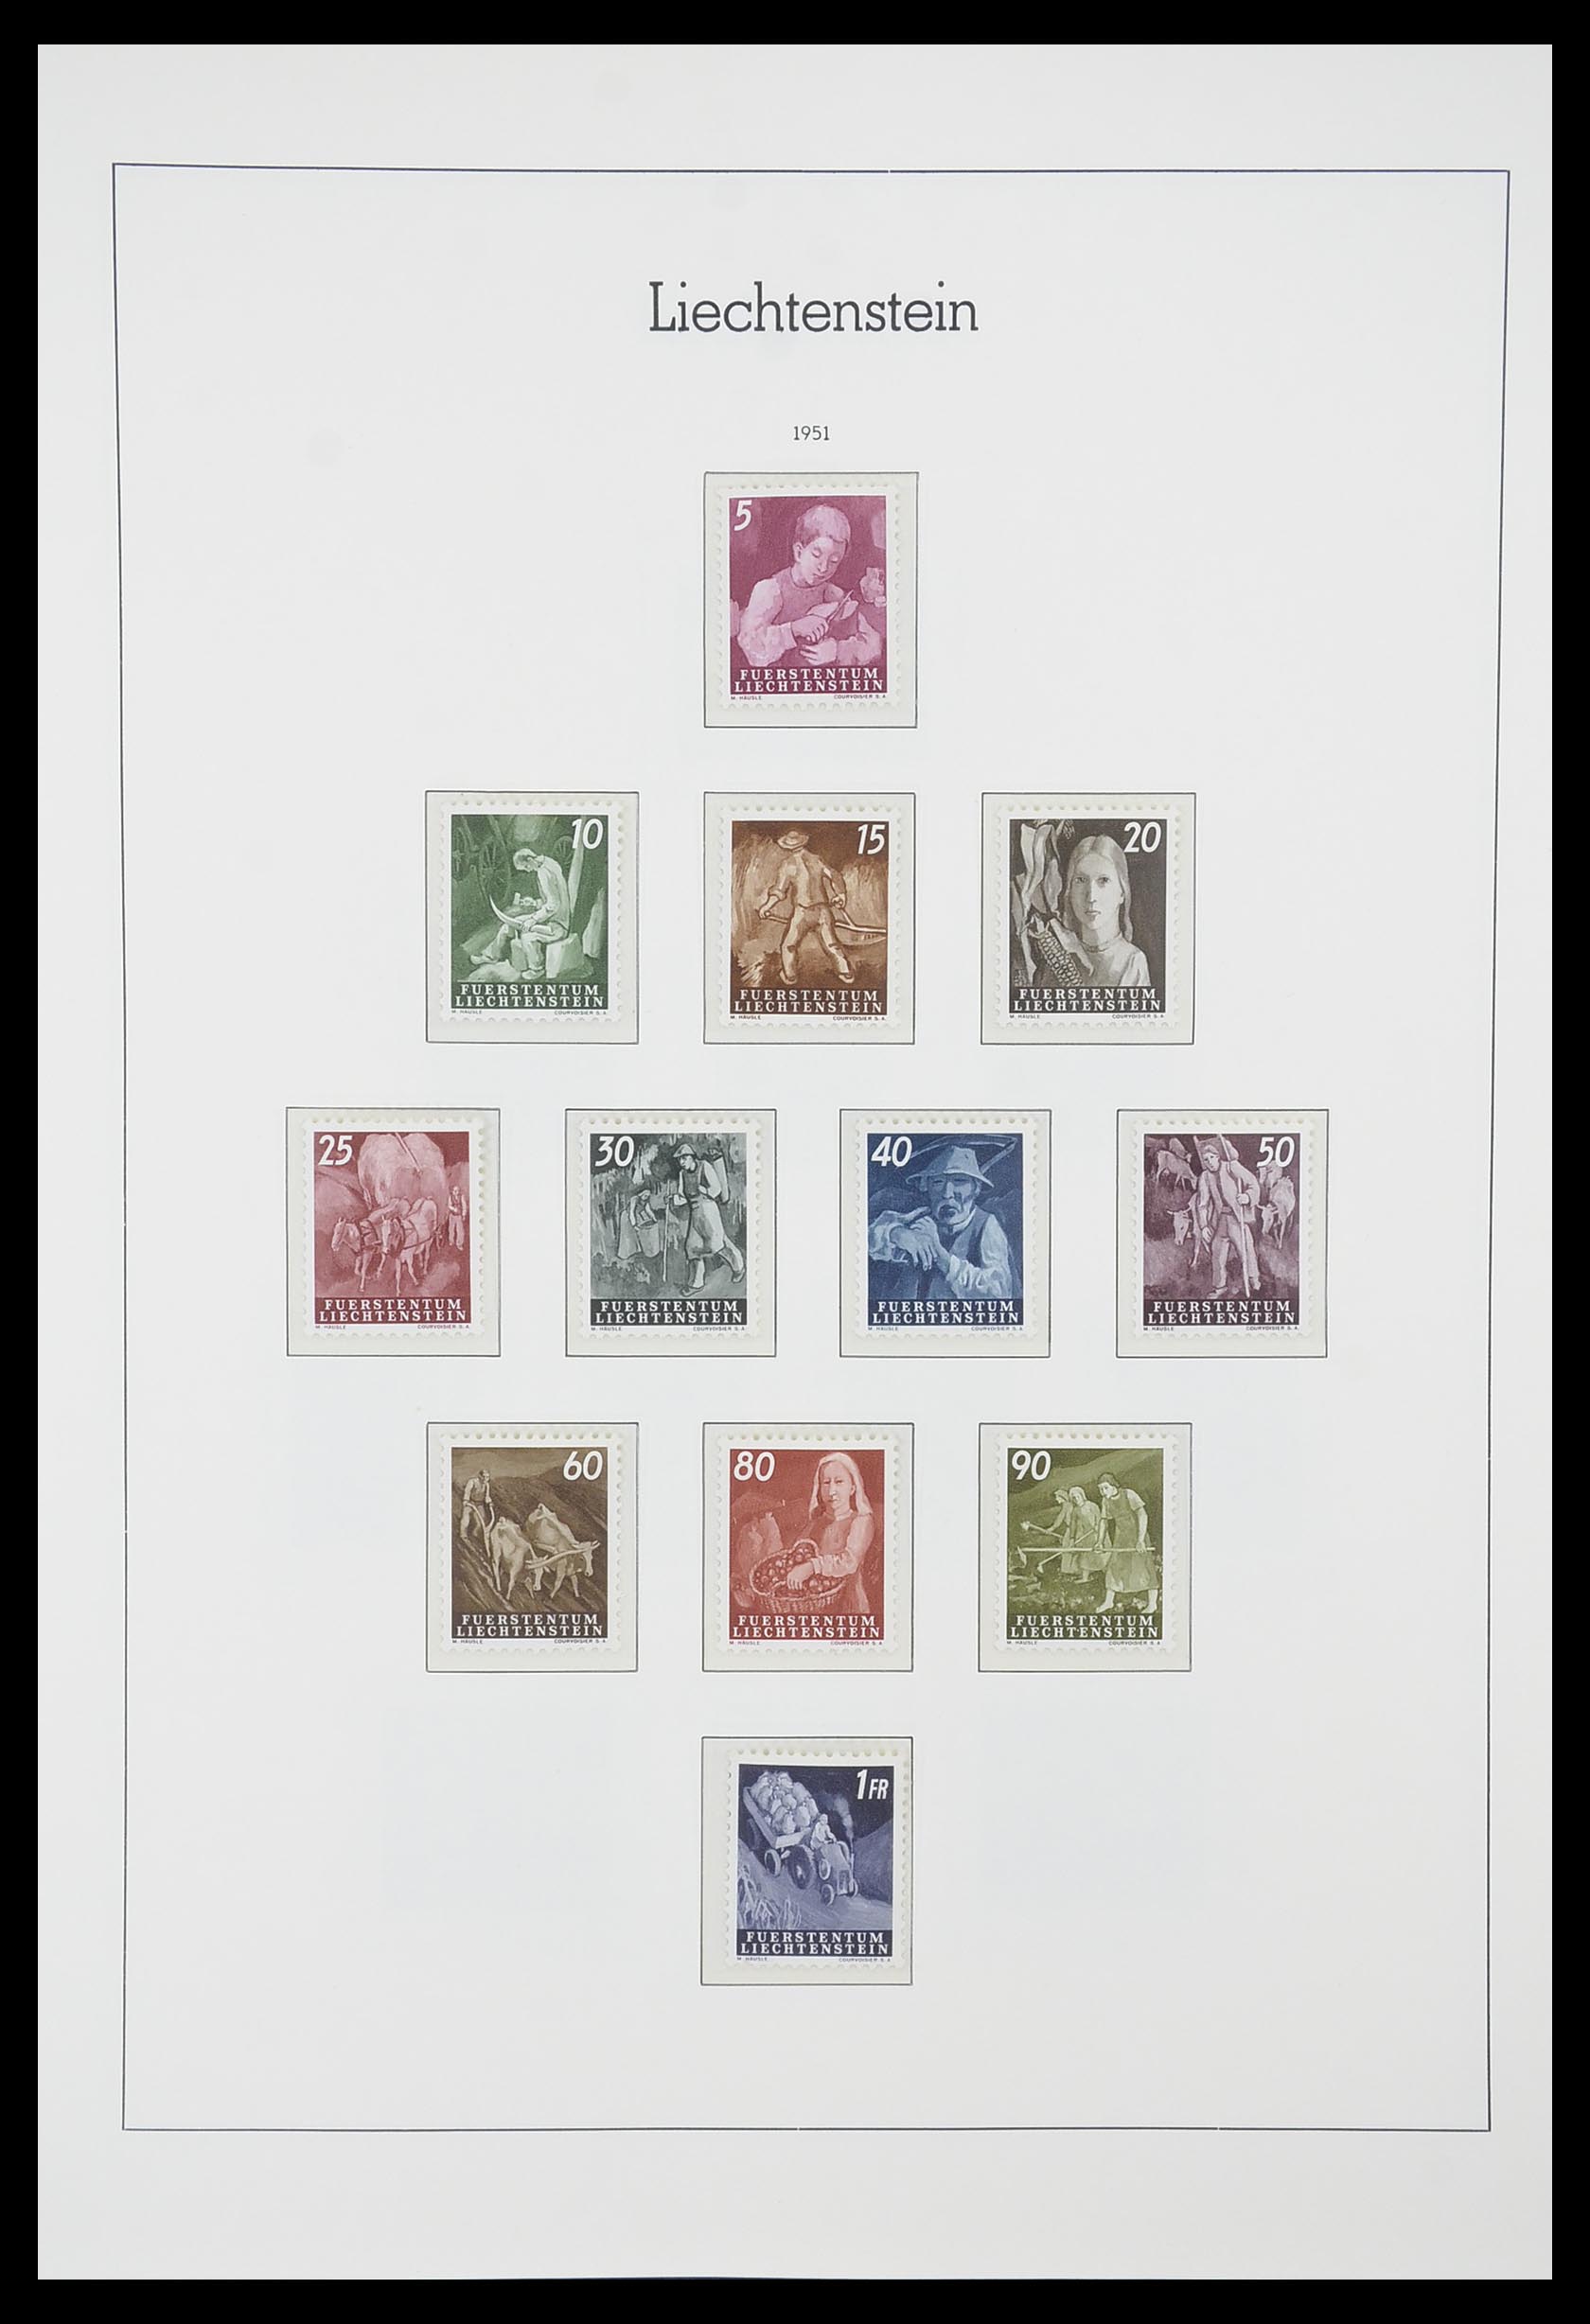 33825 029 - Stamp collection 33825 Liechtenstein 1912-1997.